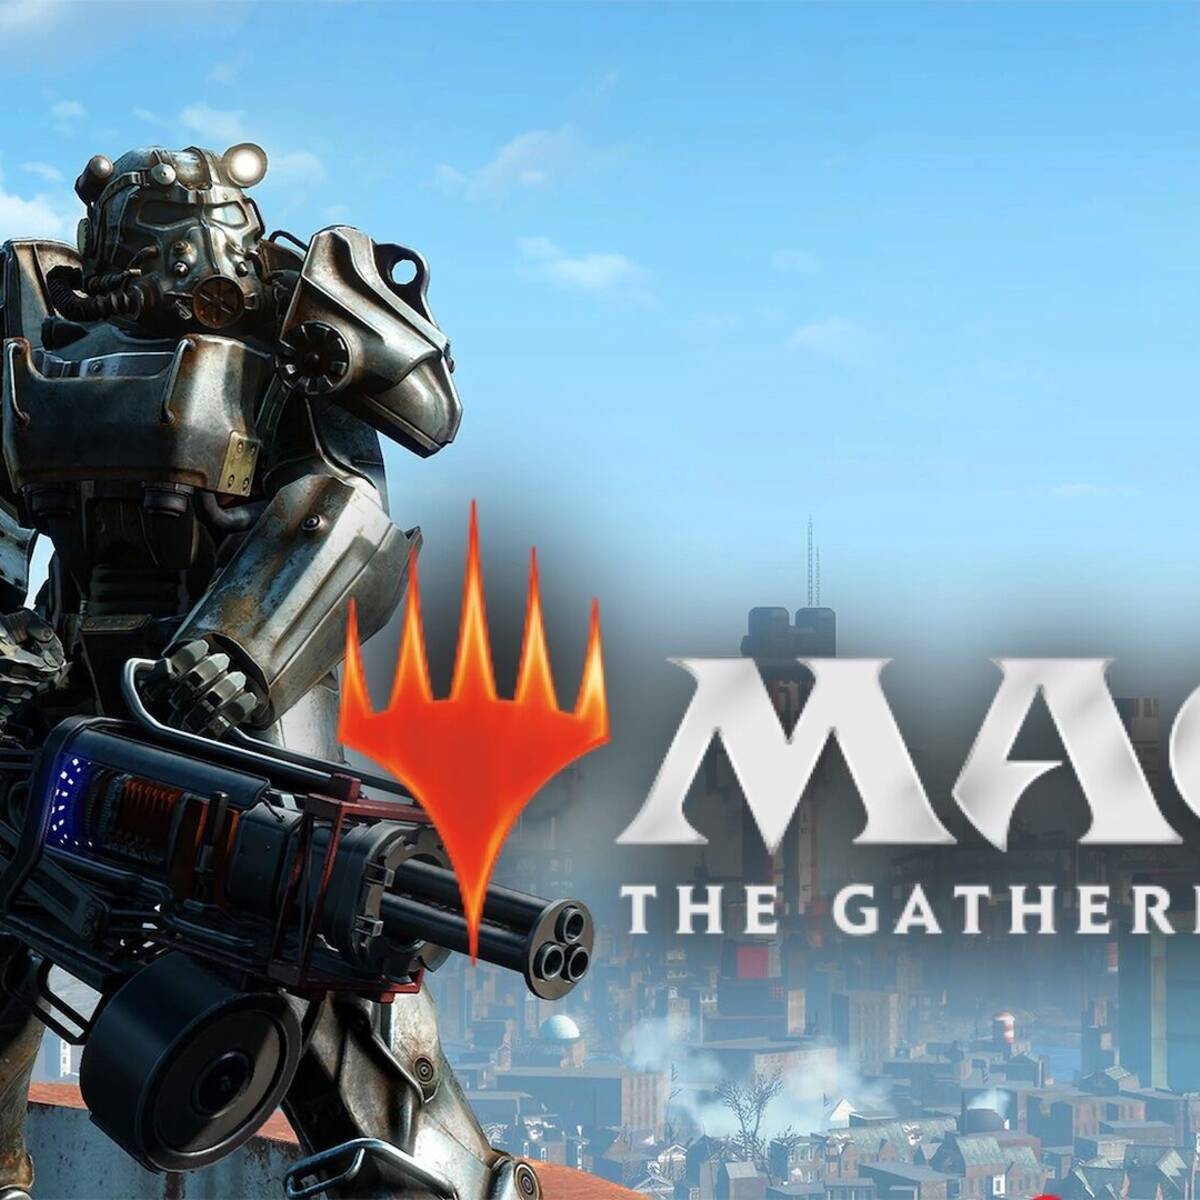 El universo de Fallout y Vault Boy llegan a Magic: The Gathering - Games  Press